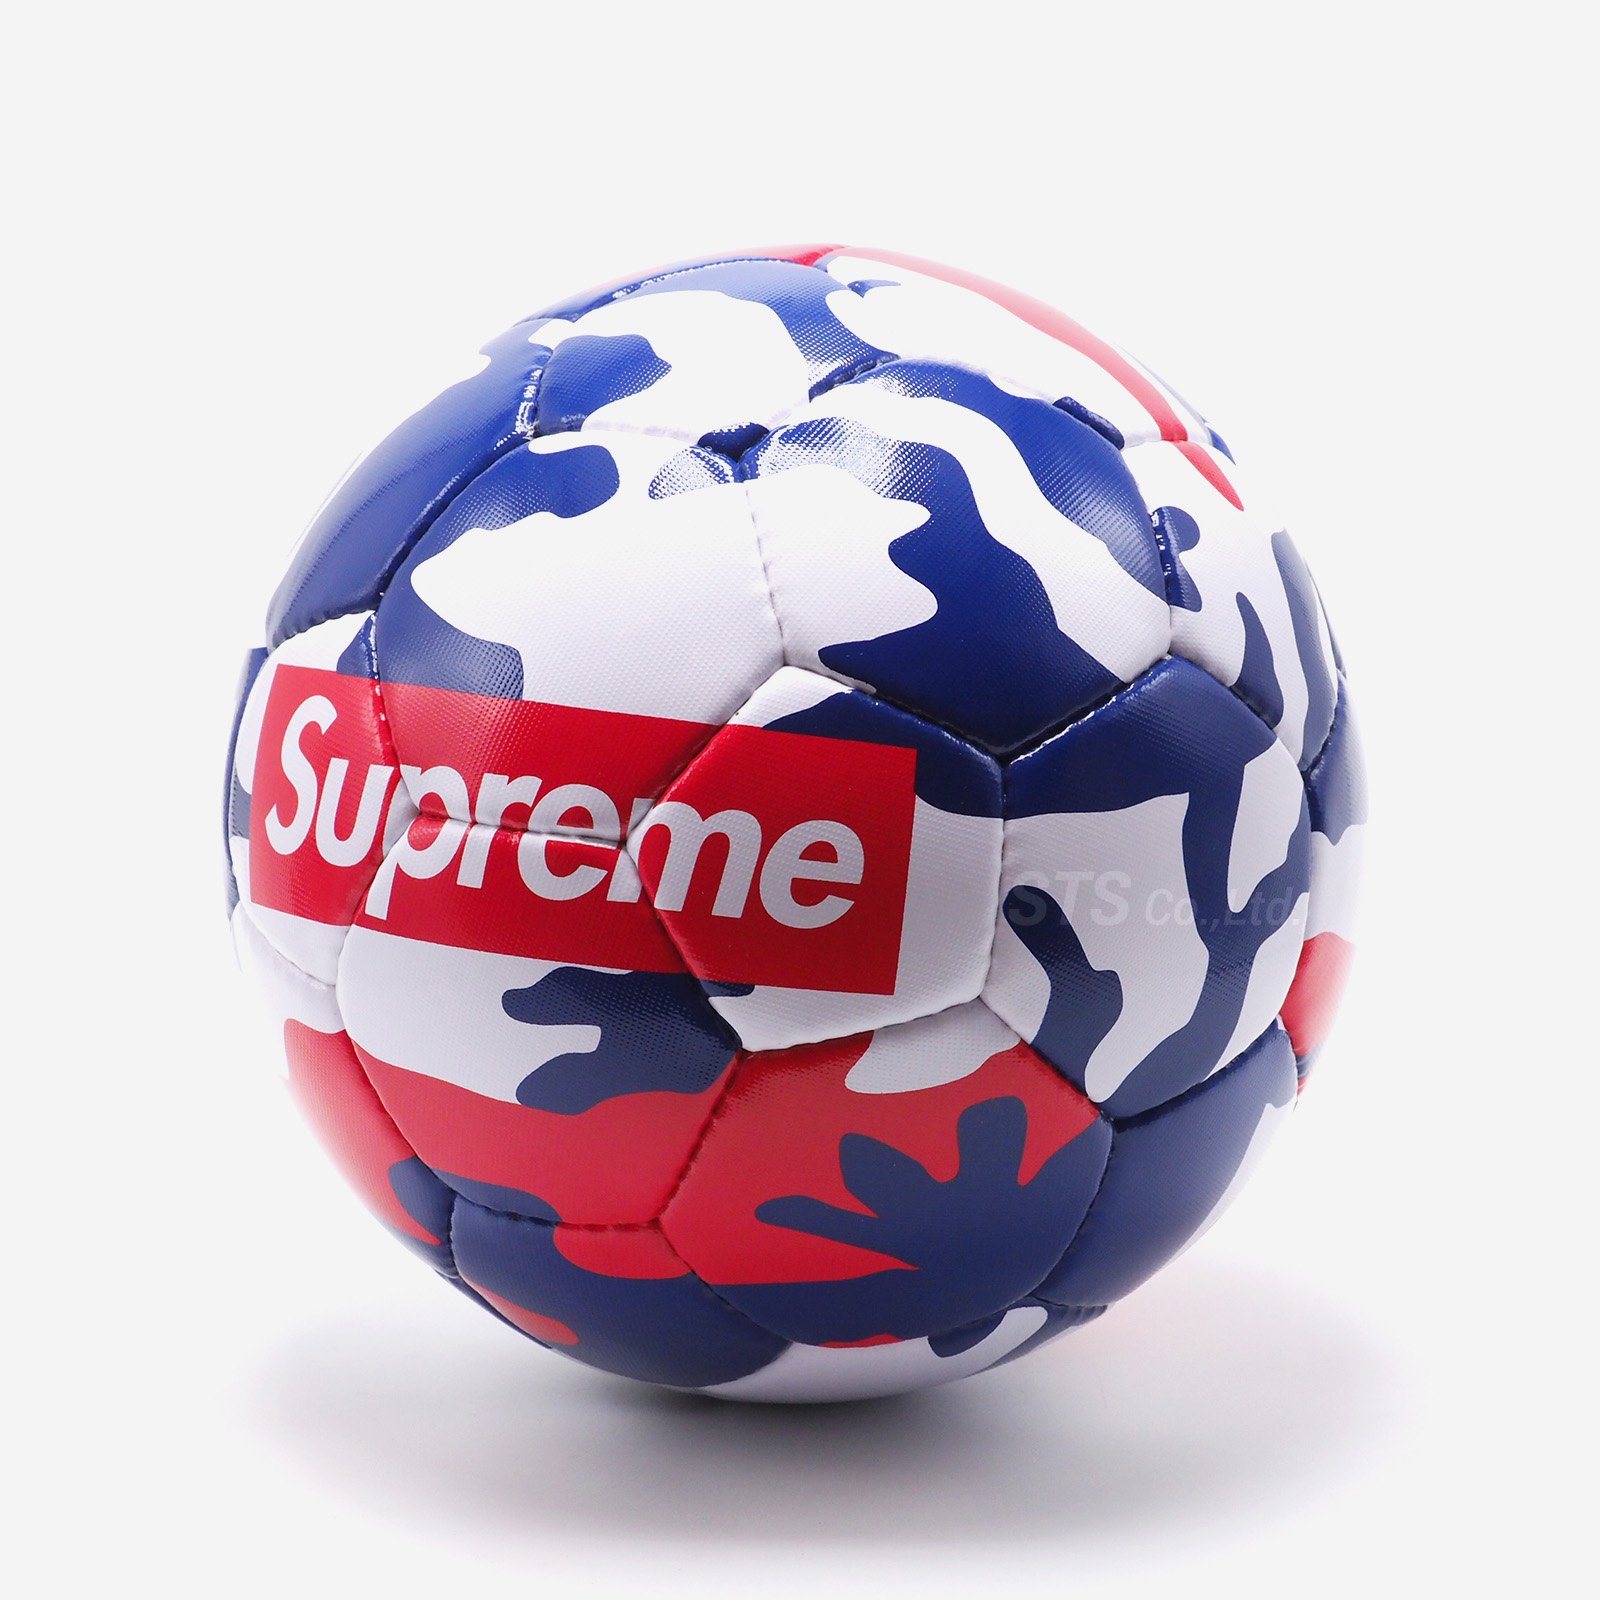 Supreme/Umbro Soccer Ball - ParkSIDER